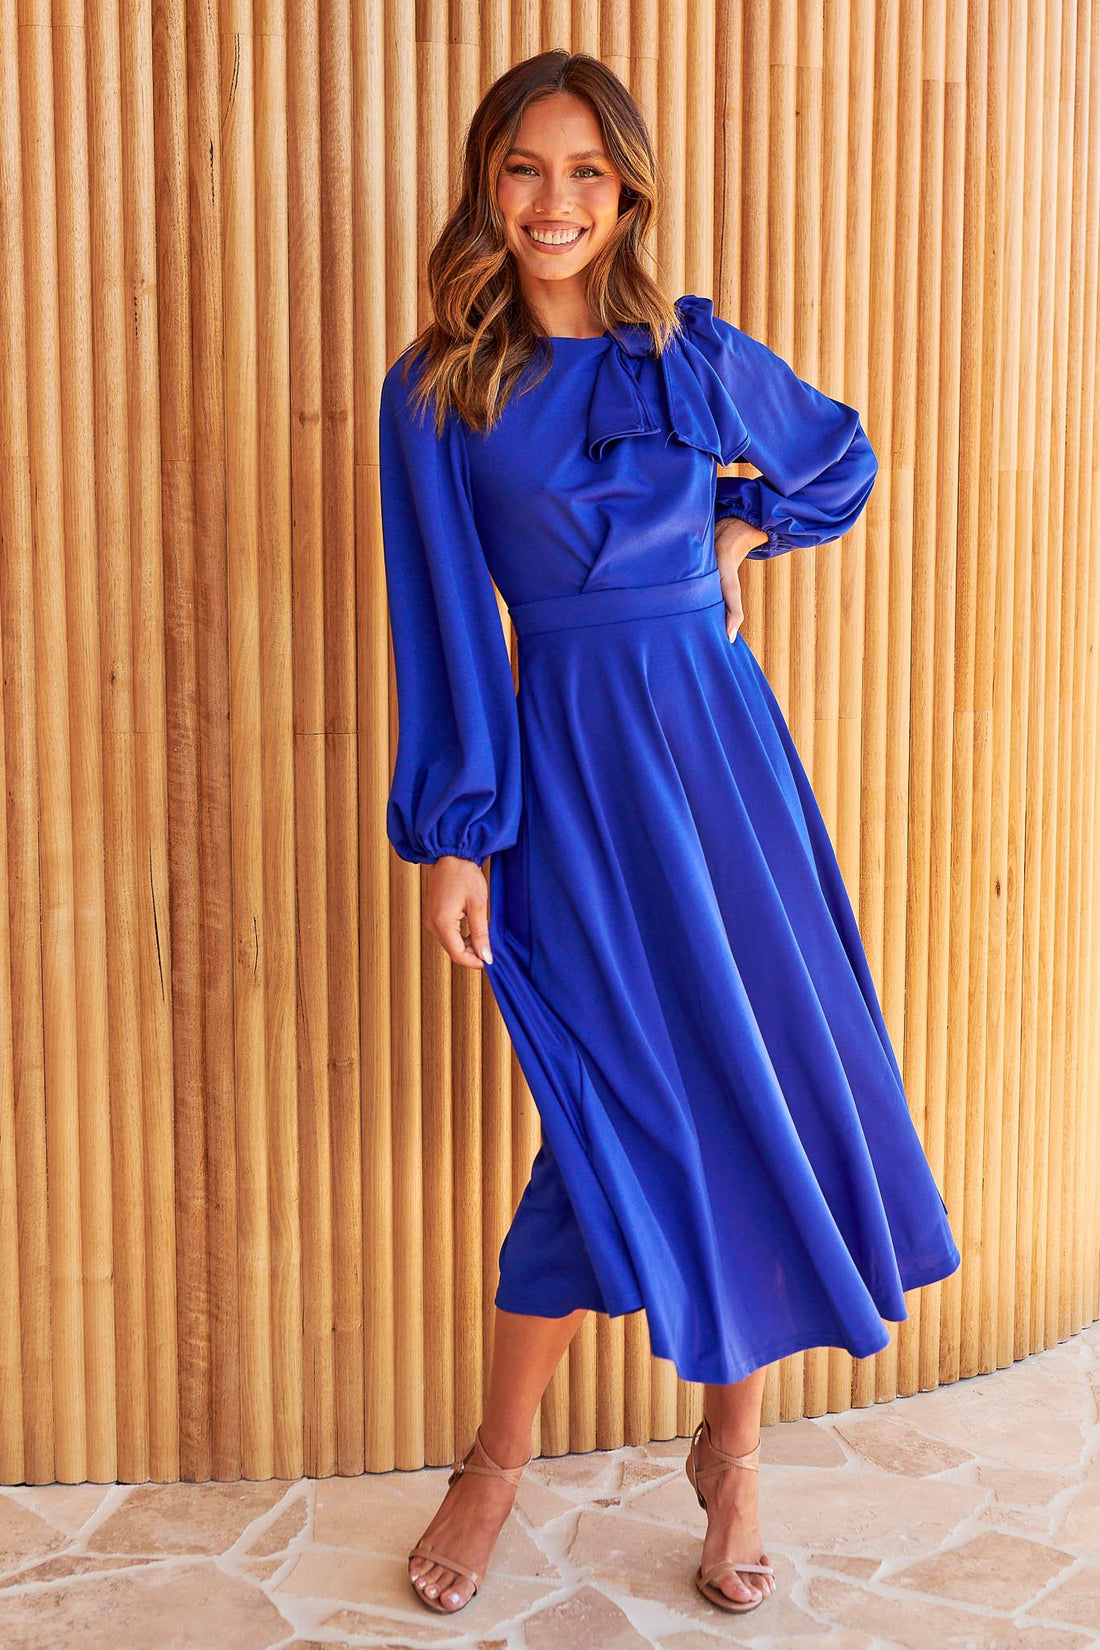 Kate Bow Shoulder Dress - Cobalt Blue - FINAL SALE